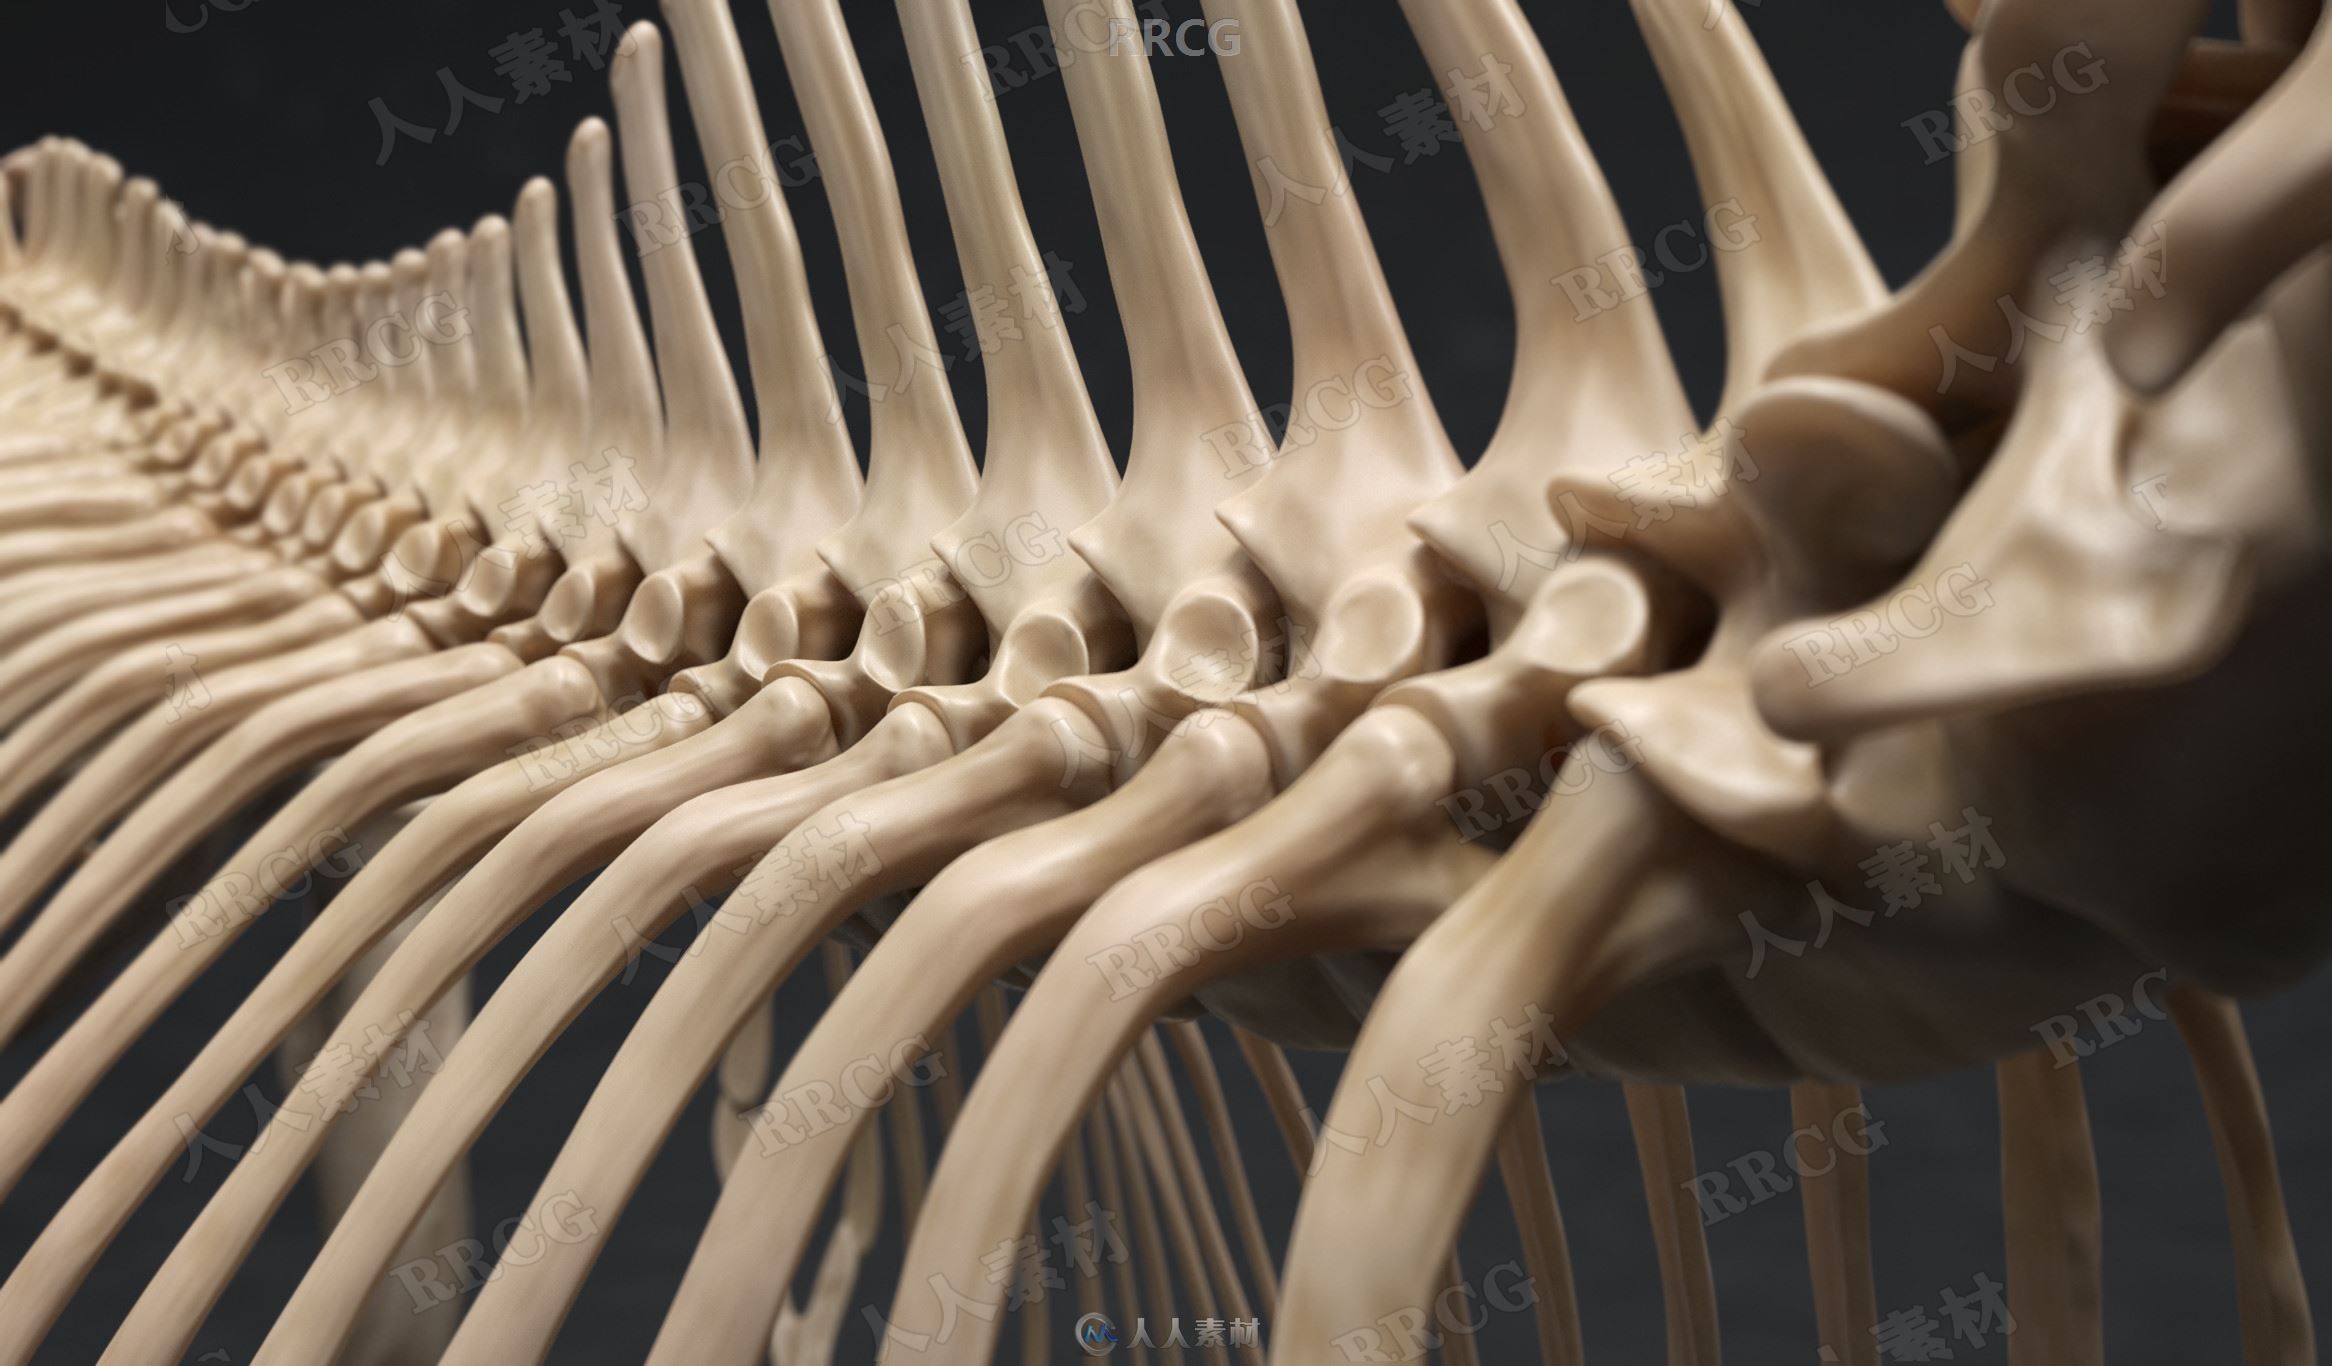 超精细马匹骏马骨骼与肌肉结构解剖学雕刻3D模型